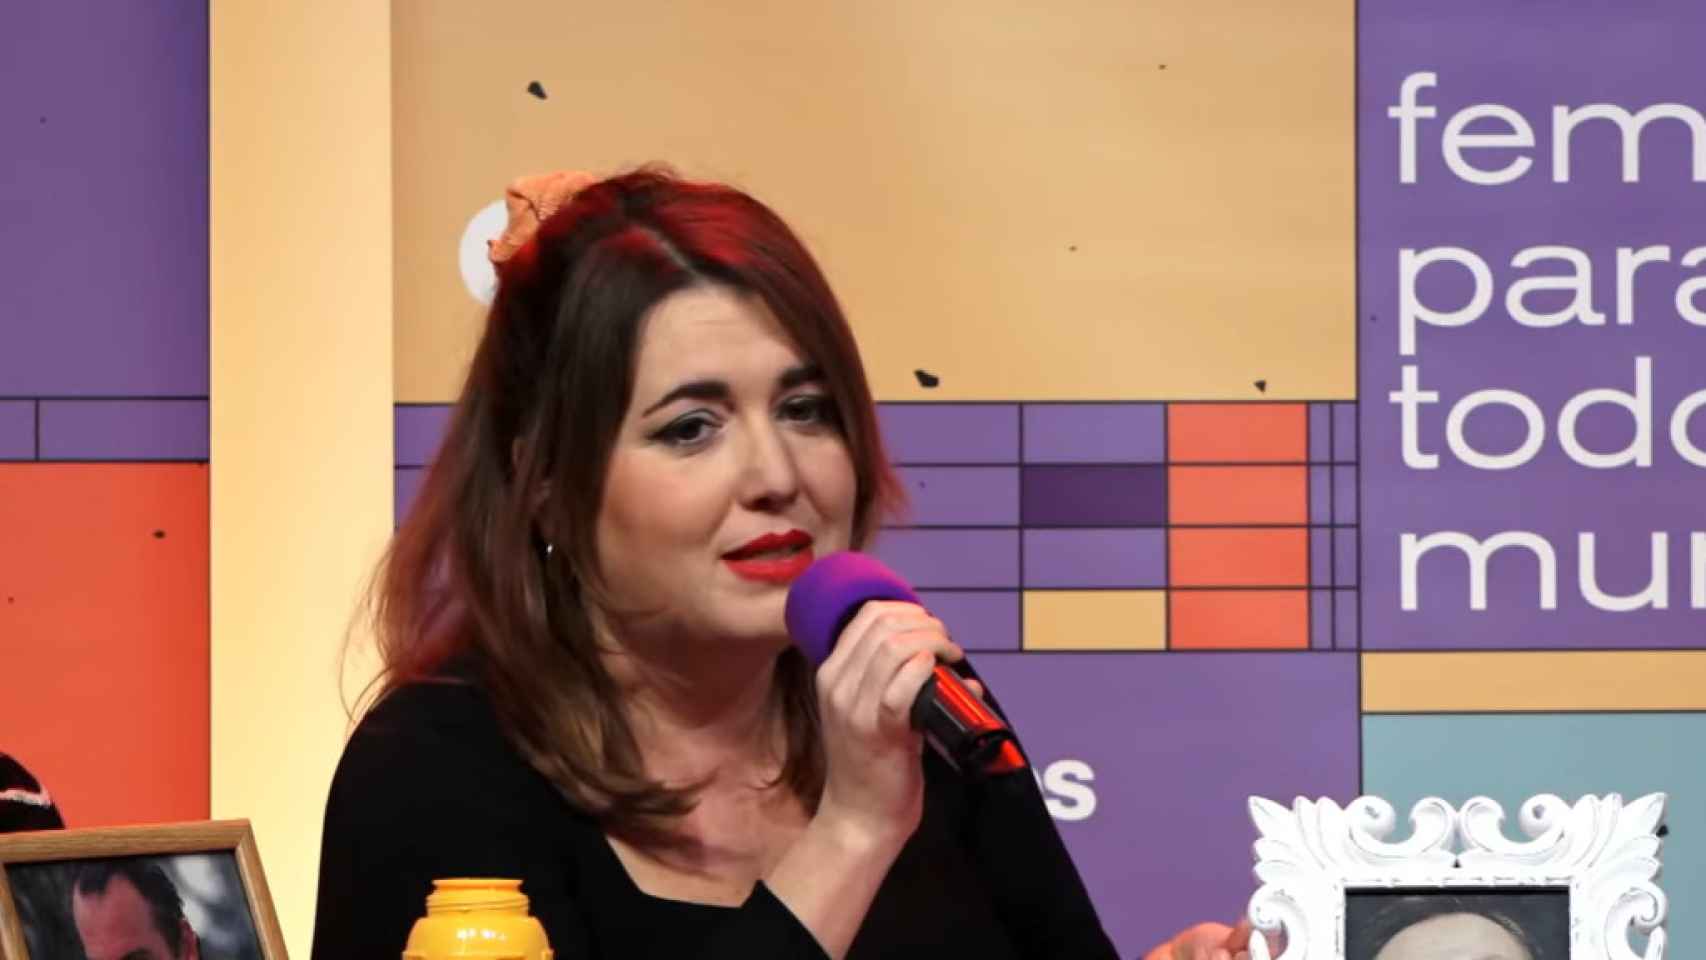 Ángela Rodríguez Pam en el evento celebrado por Podemos.